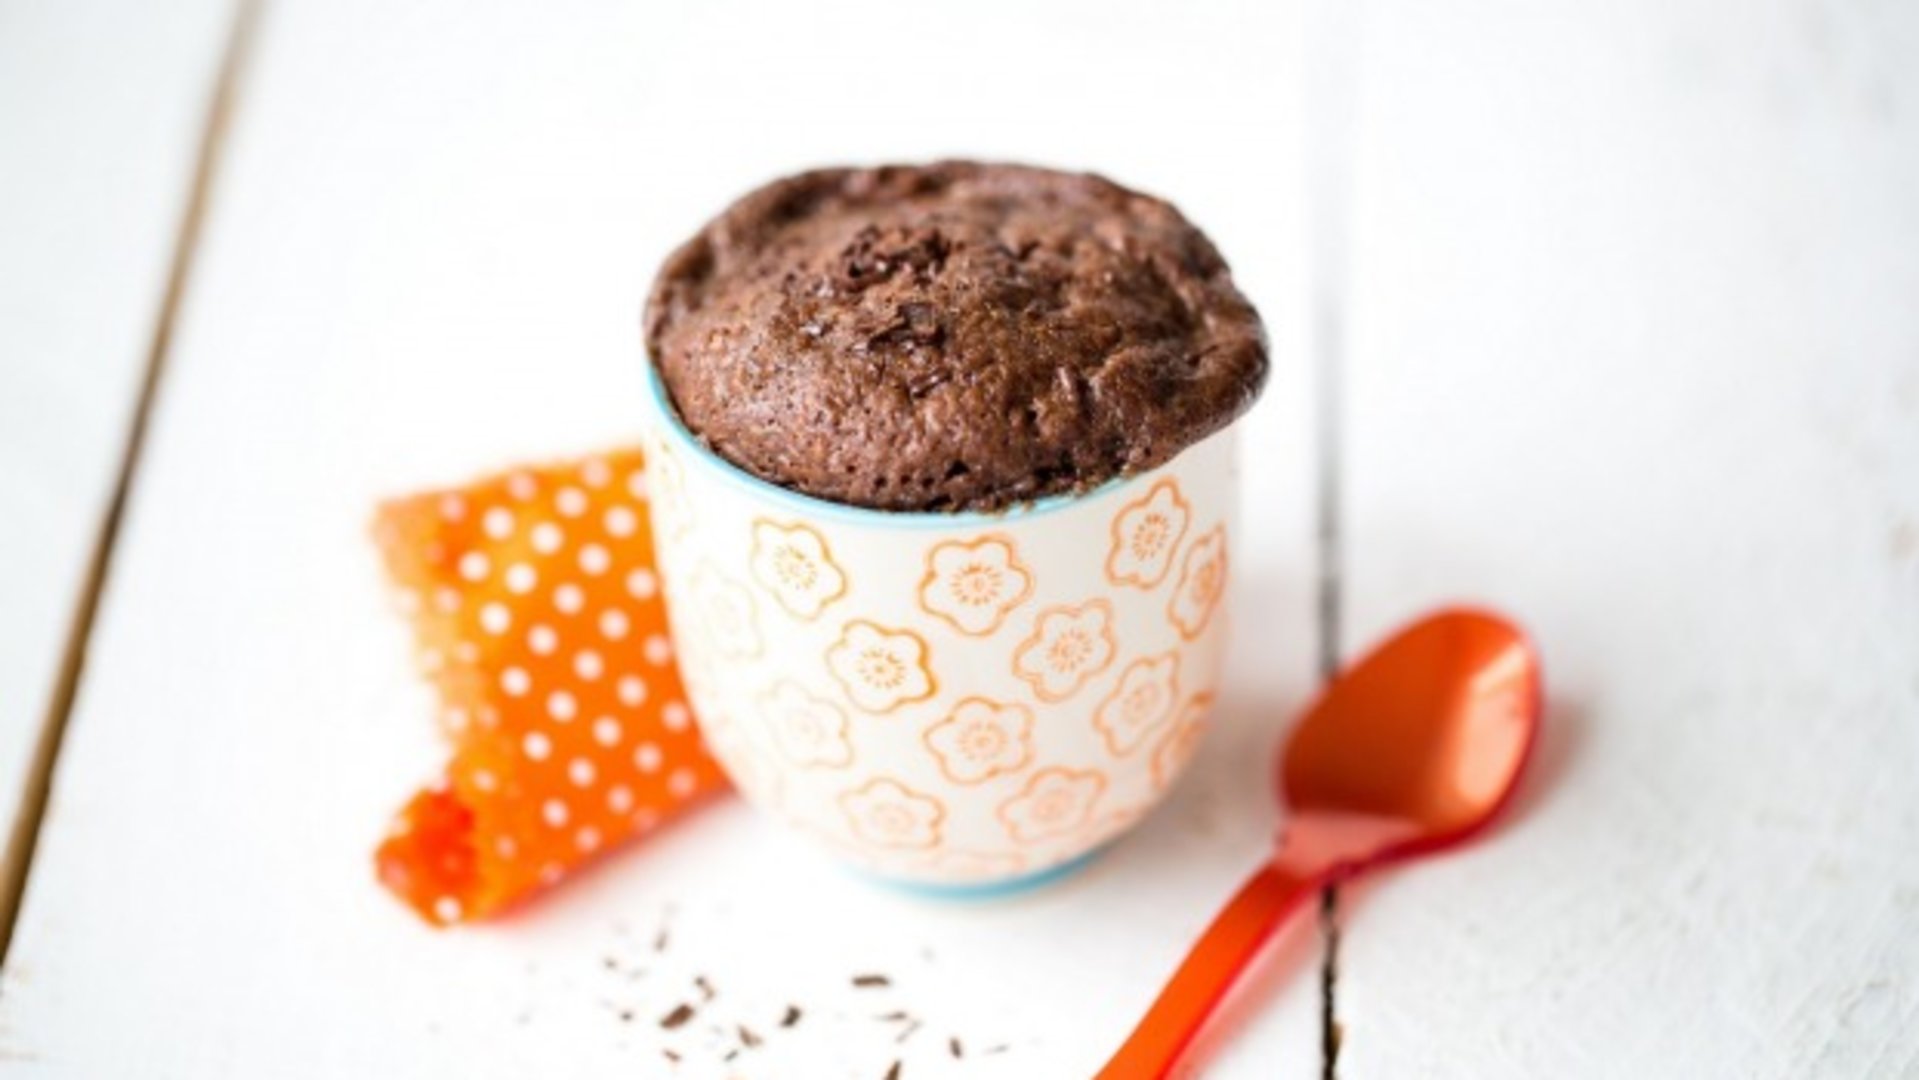 6 Idees Recettes De Mug Cakes Pour Les Gourmands Blog Cuisinella